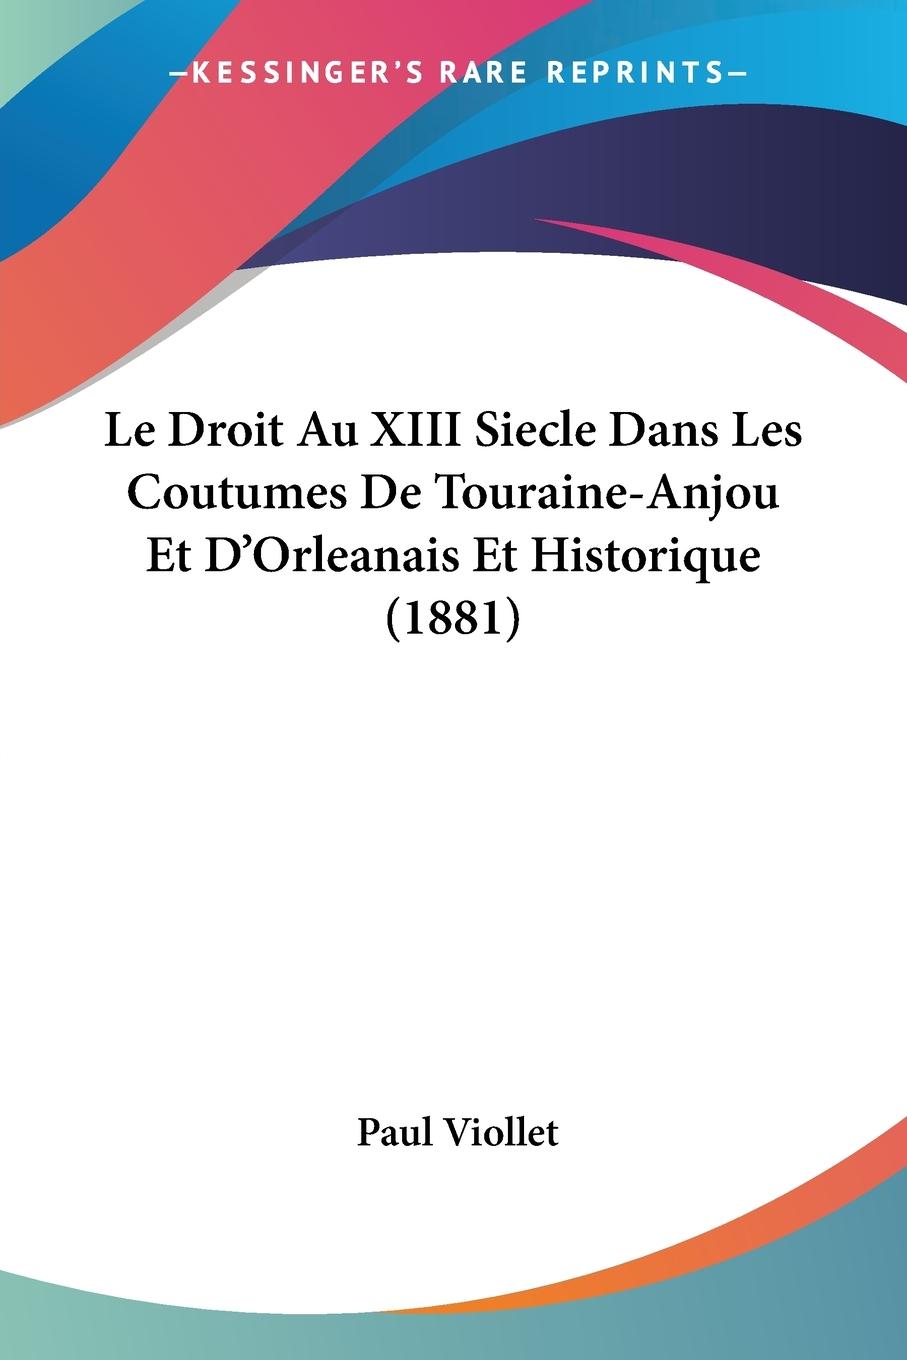 Le Droit Au XIII Siecle Dans Les Coutumes De Touraine-Anjou Et D Orleanais Et Historique (1881) - Viollet, Paul